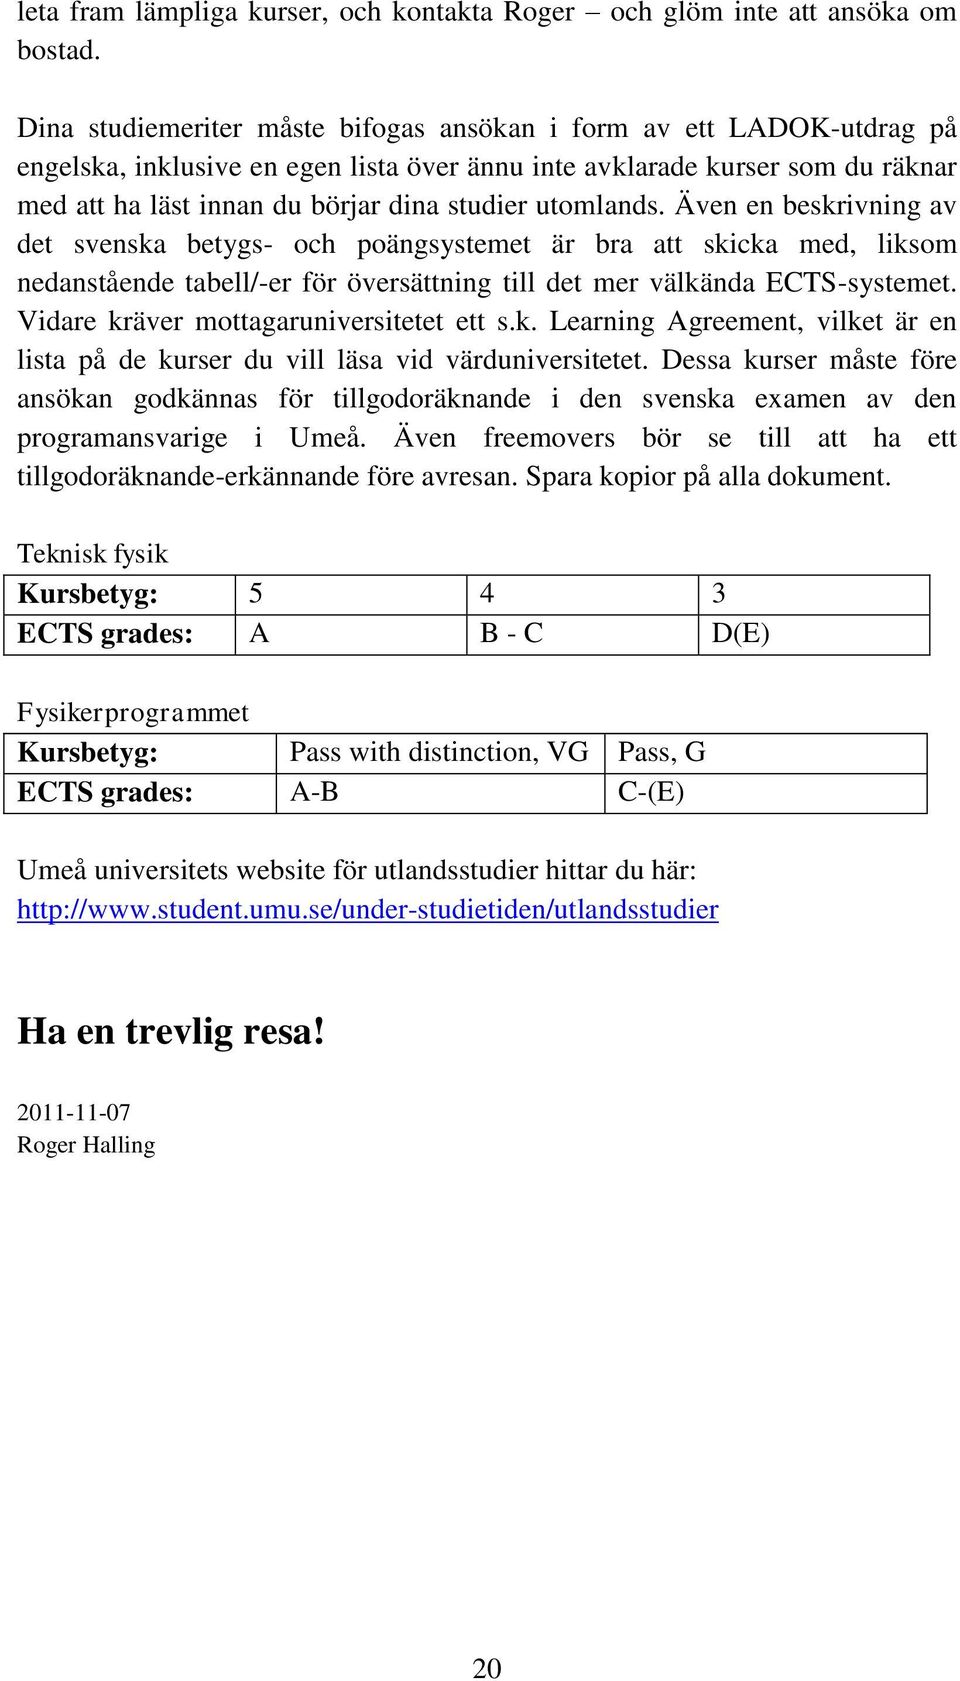 utomlands. Även en beskrivning av det svenska betygs- och poängsystemet är bra att skicka med, liksom nedanstående tabell/-er för översättning till det mer välkända ECTS-systemet.